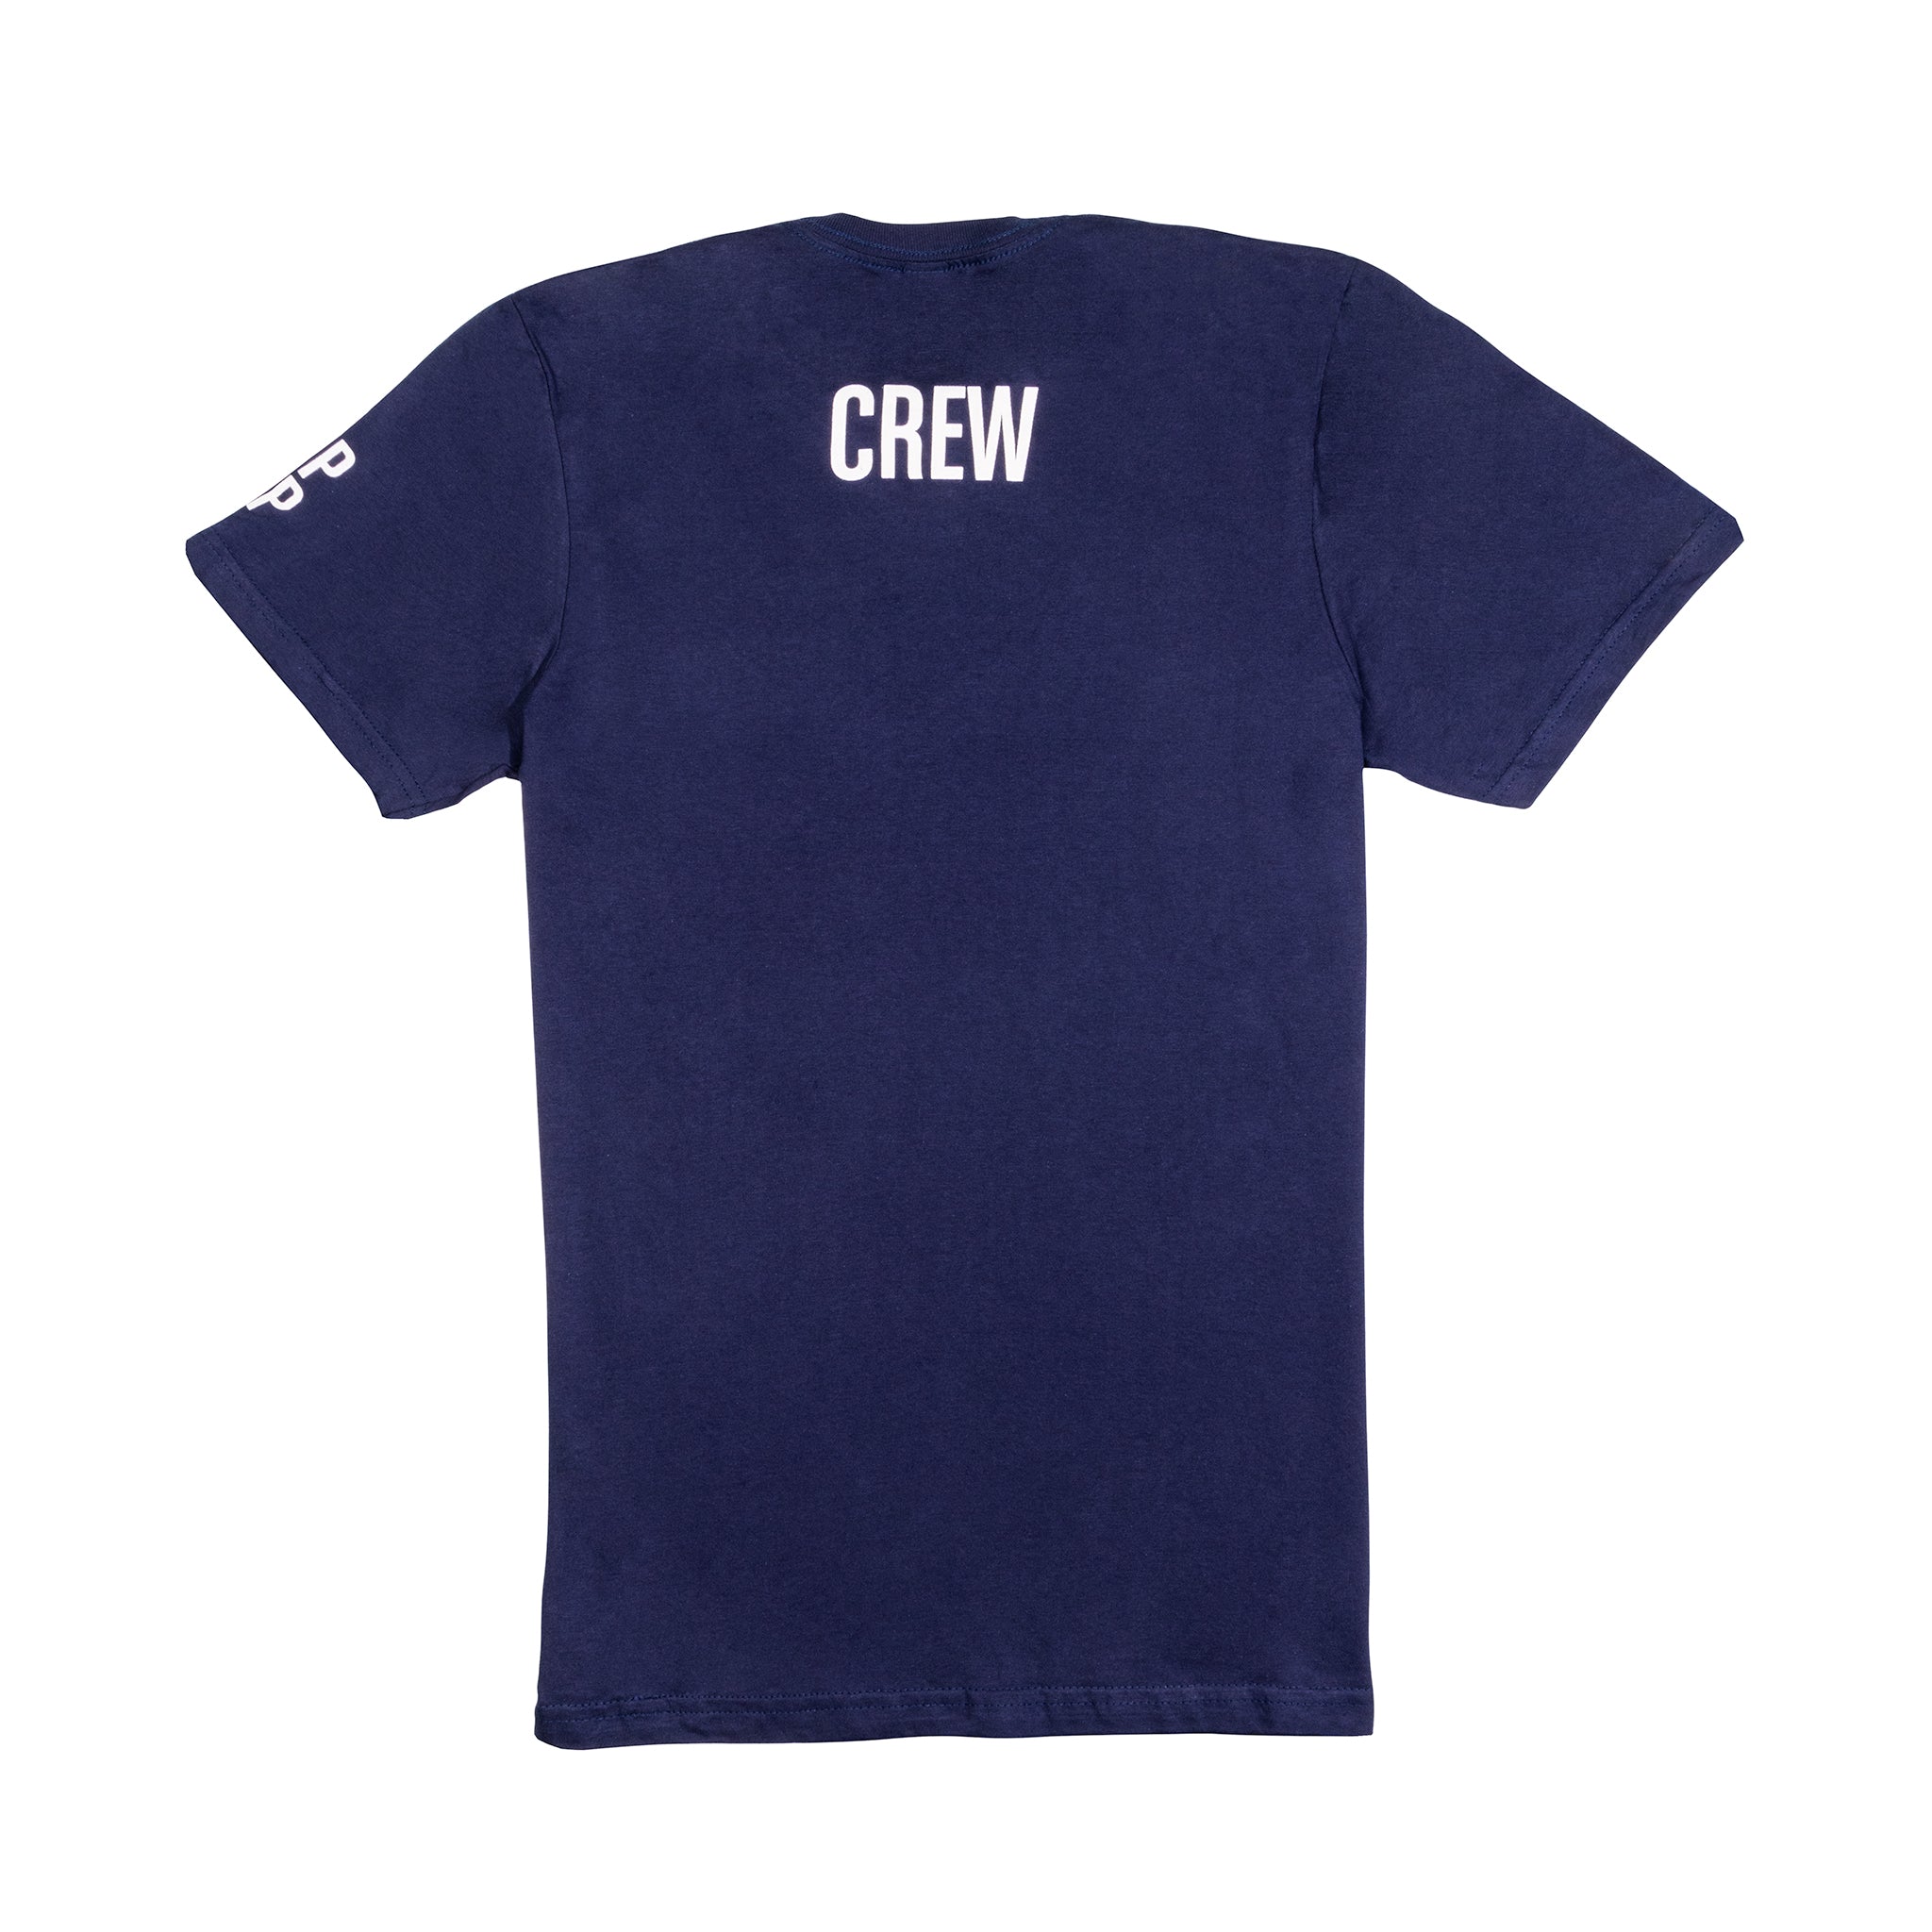 Popcorn Culture Crew Shirt